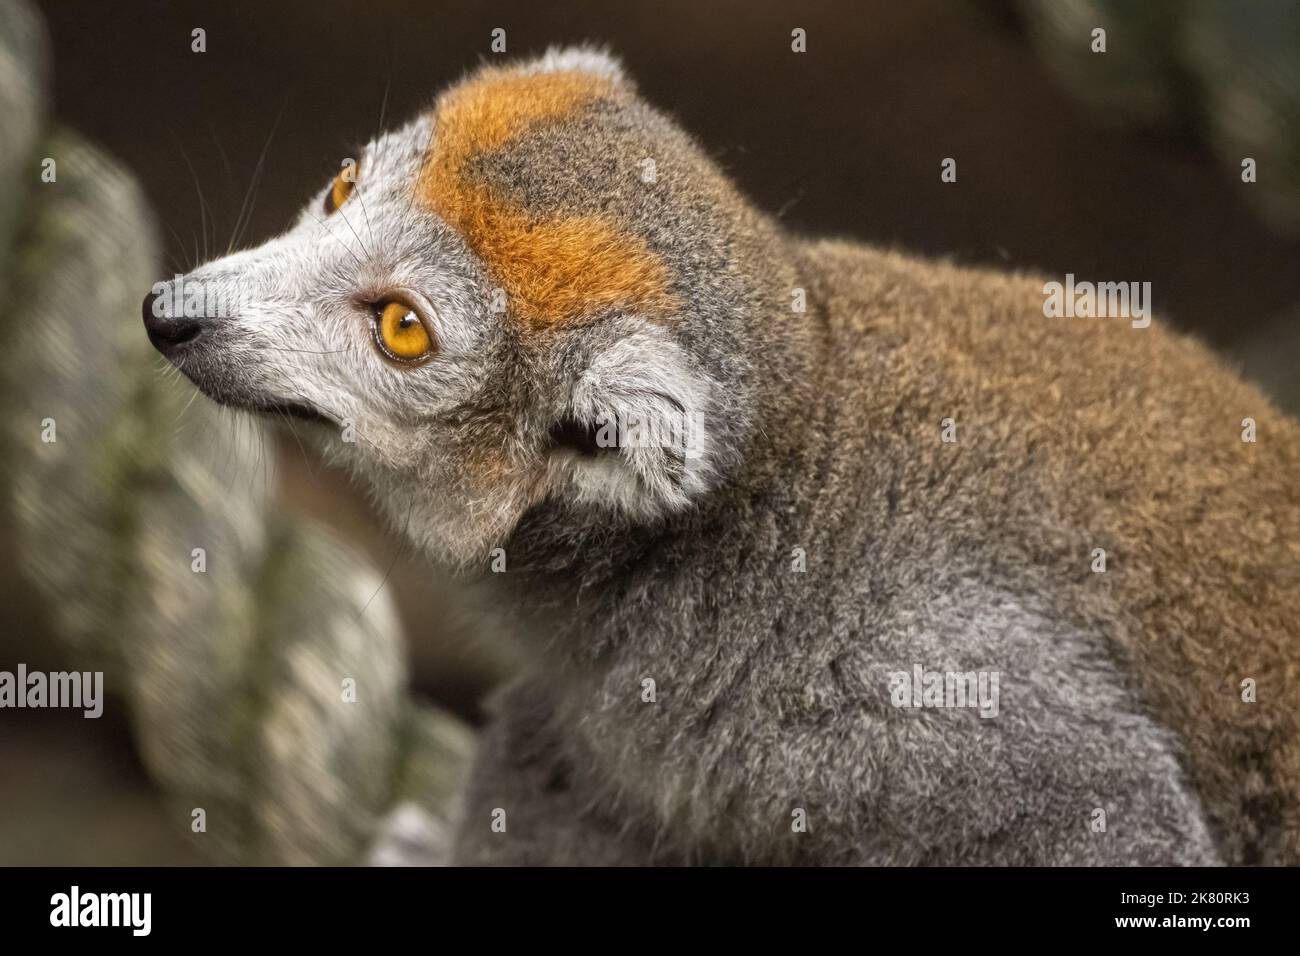 Lemur couronné (Eulemur coronatus) de Madagascar, un pays insulaire au large de la côte sud-africaine, au zoo d'Atlanta à Atlanta, en Géorgie. (ÉTATS-UNIS) Banque D'Images